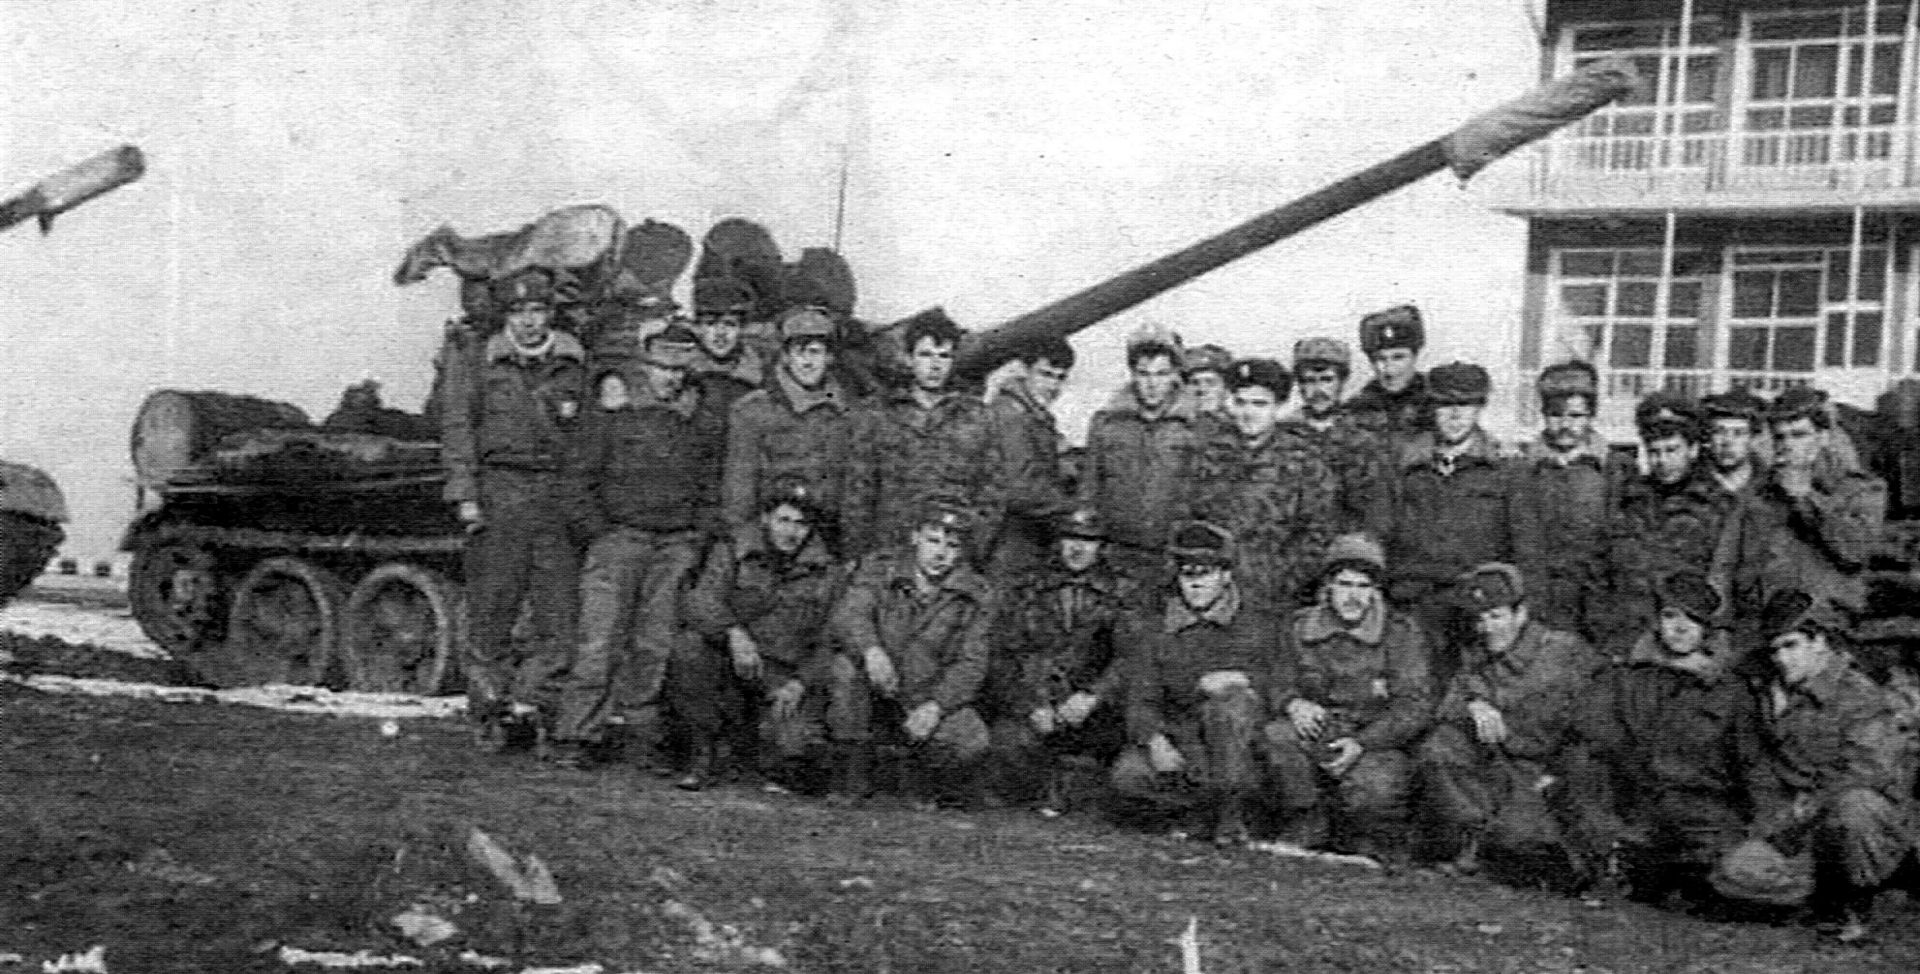  Зимата на 1990 година Танковата рота на полигона в Балабаново, малко преди нещастието 